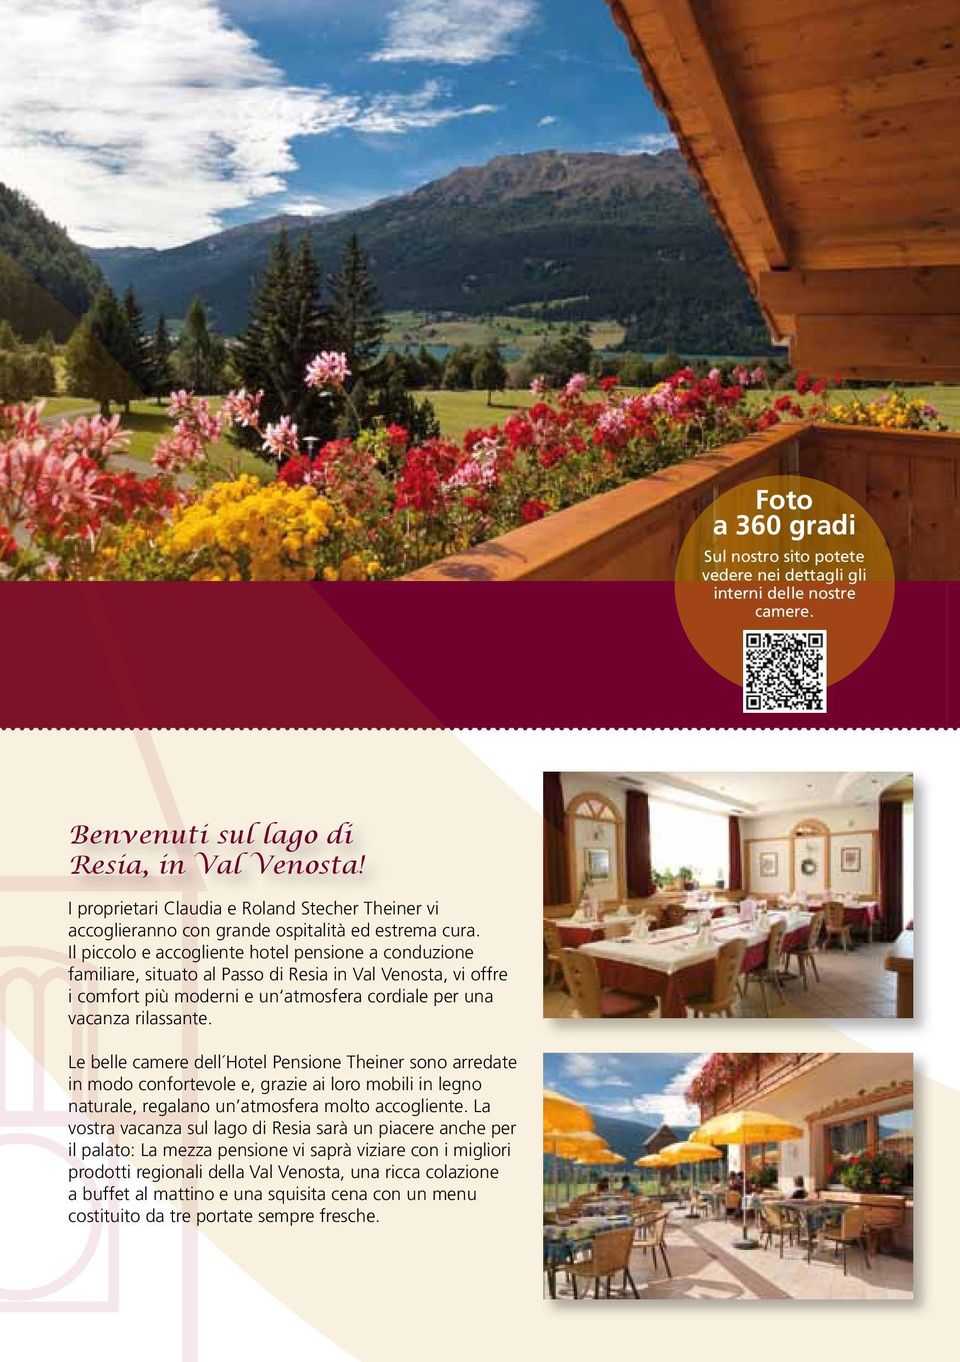 Il piccolo e accogliente hotel pensione a conduzione familiare, situato al Passo di Resia in Val Venosta, vi offre i comfort più moderni e un atmosfera cordiale per una vacanza rilassante.